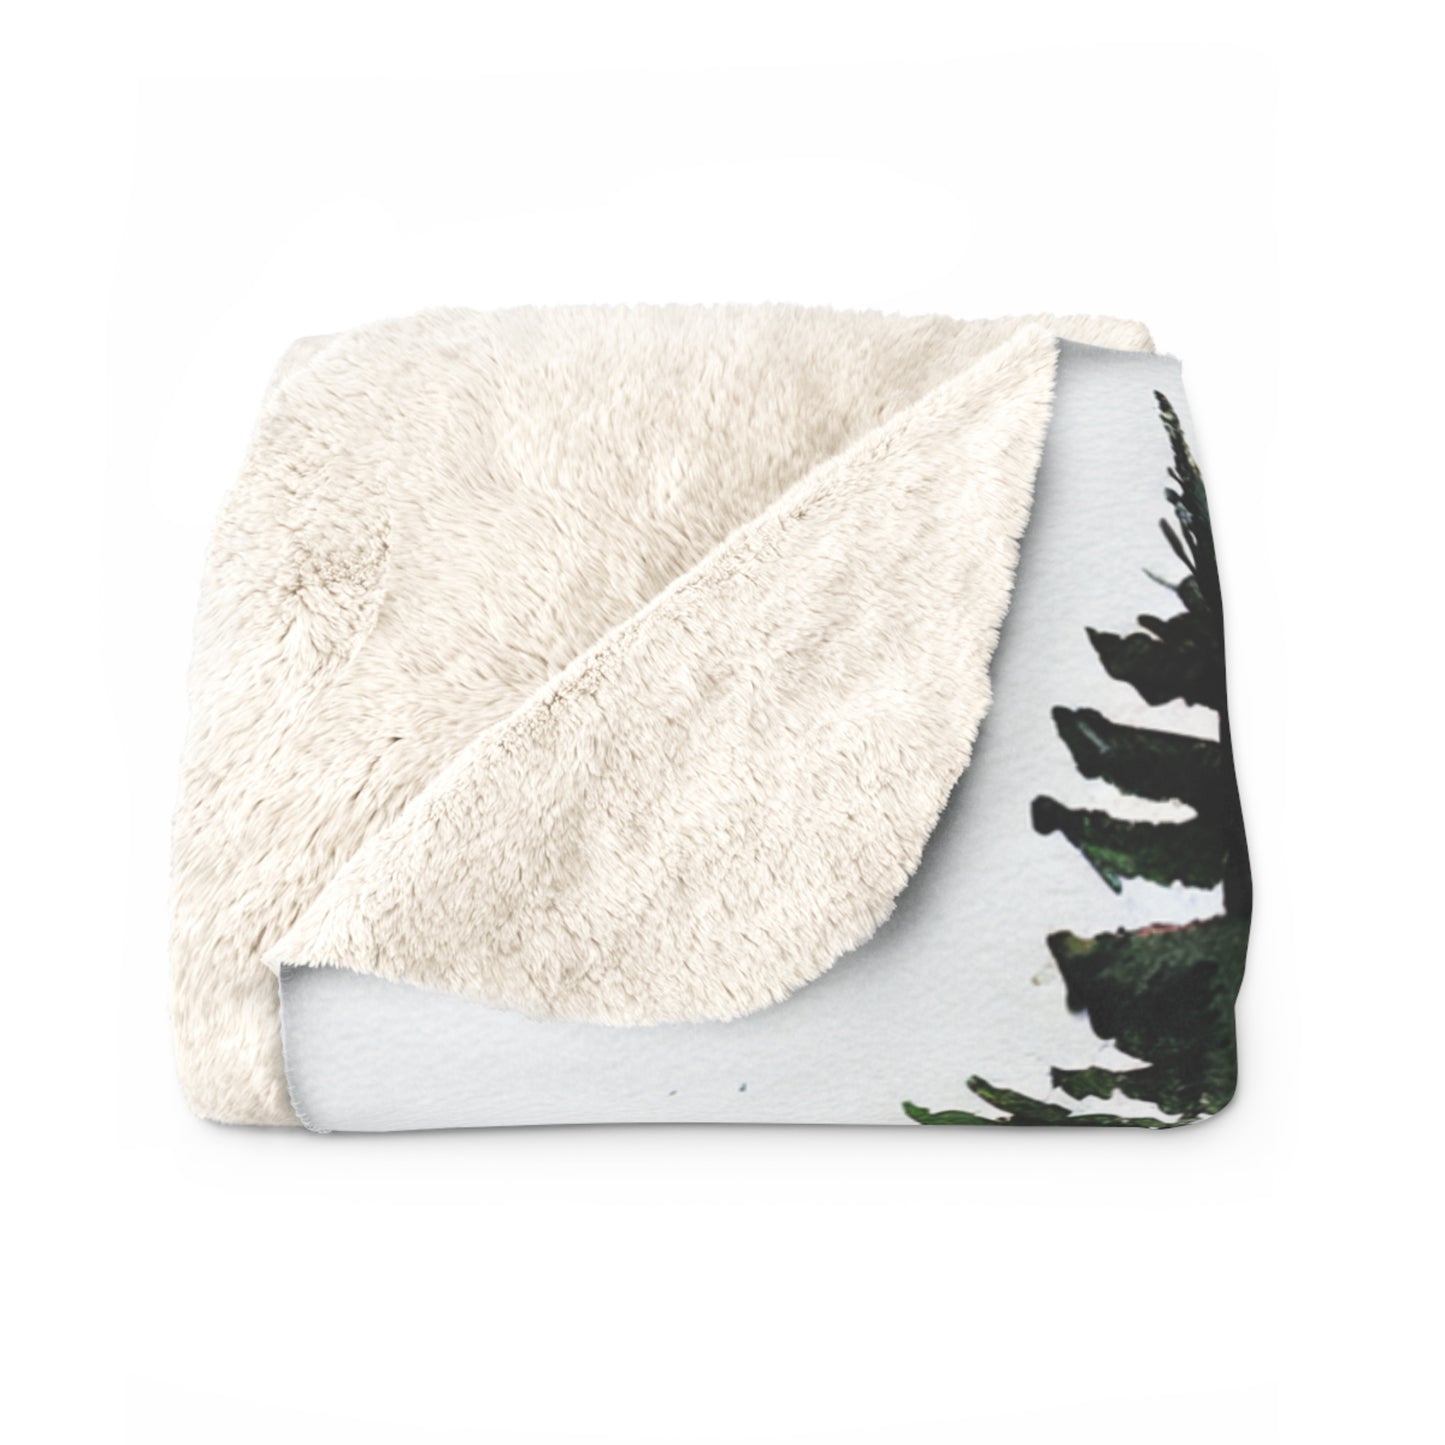 Cozy PNW Fleece Blanket, Cabin throw Blanket, Blanket Gift, Watercolor Fir Trees throw blanket decor gift